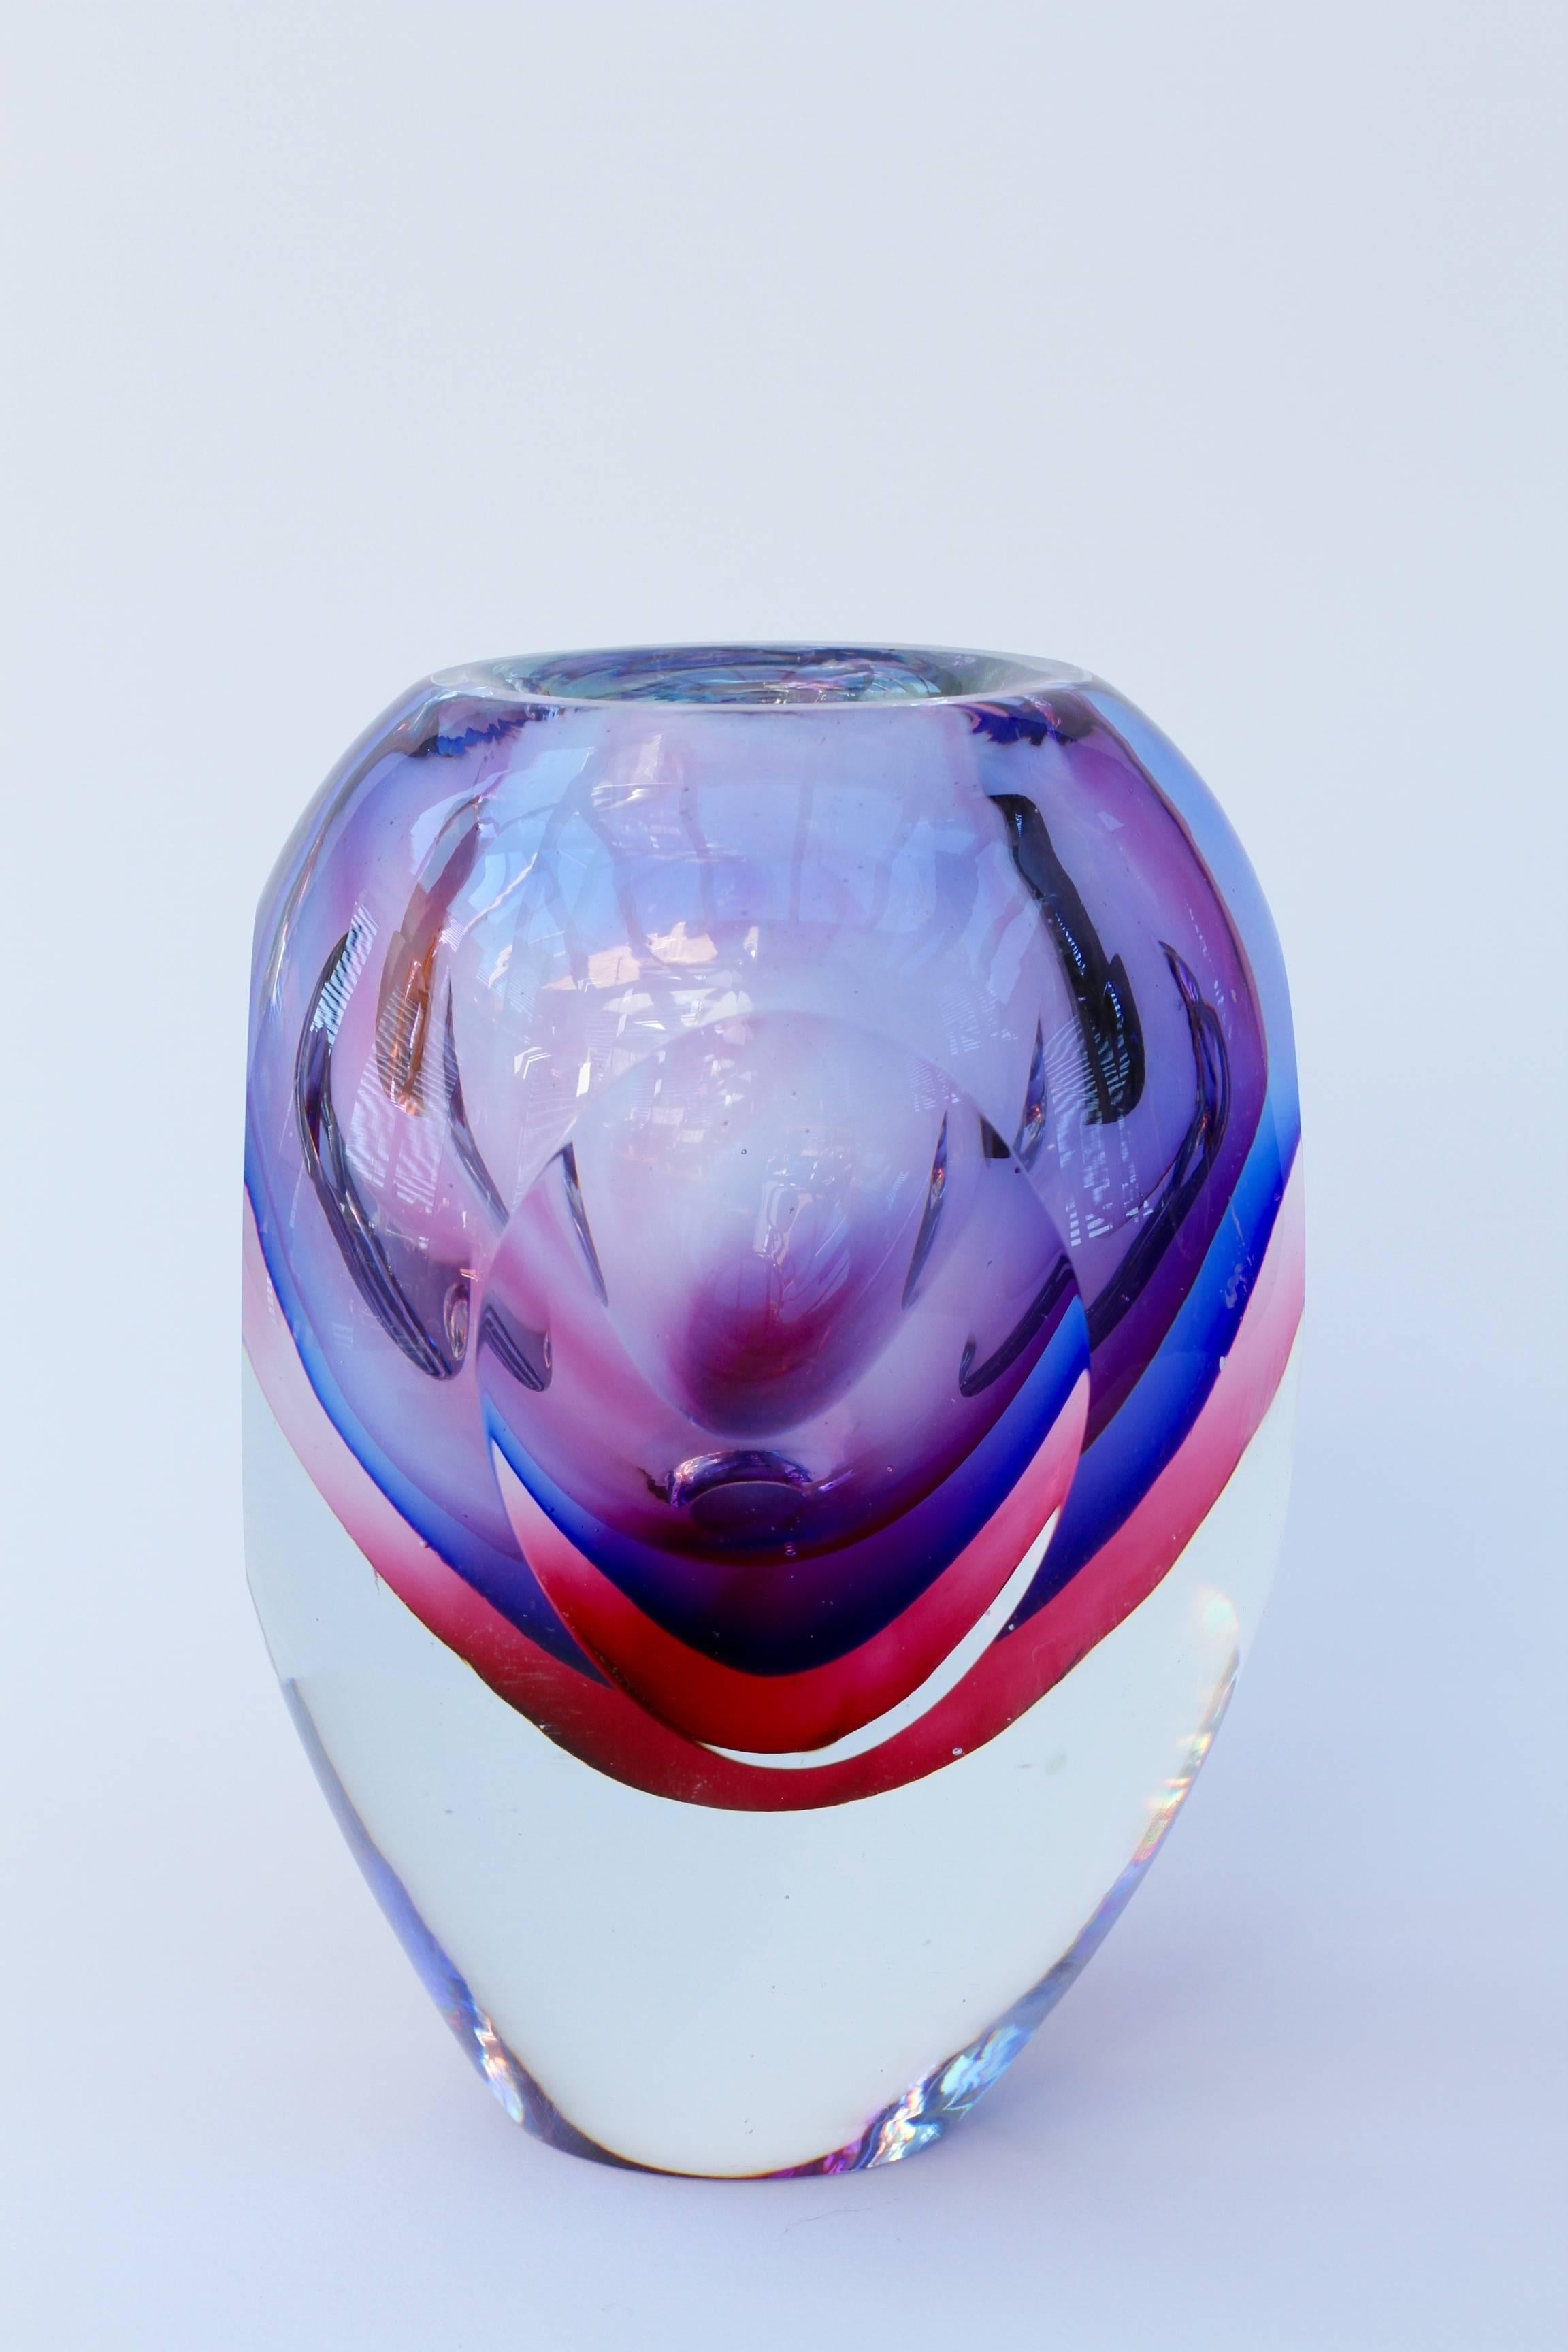 Eine atemberaubende, Vintage, lebendige und farbenfrohe (bunt) mundgeblasene Murano Kunstglas Schüssel oder Vase zugeschrieben Luigi Onesto. Absolut außergewöhnlich in jeder Hinsicht. Die Sommerso-Technik mit lila, kobaltblau, rosa und klarem Glas